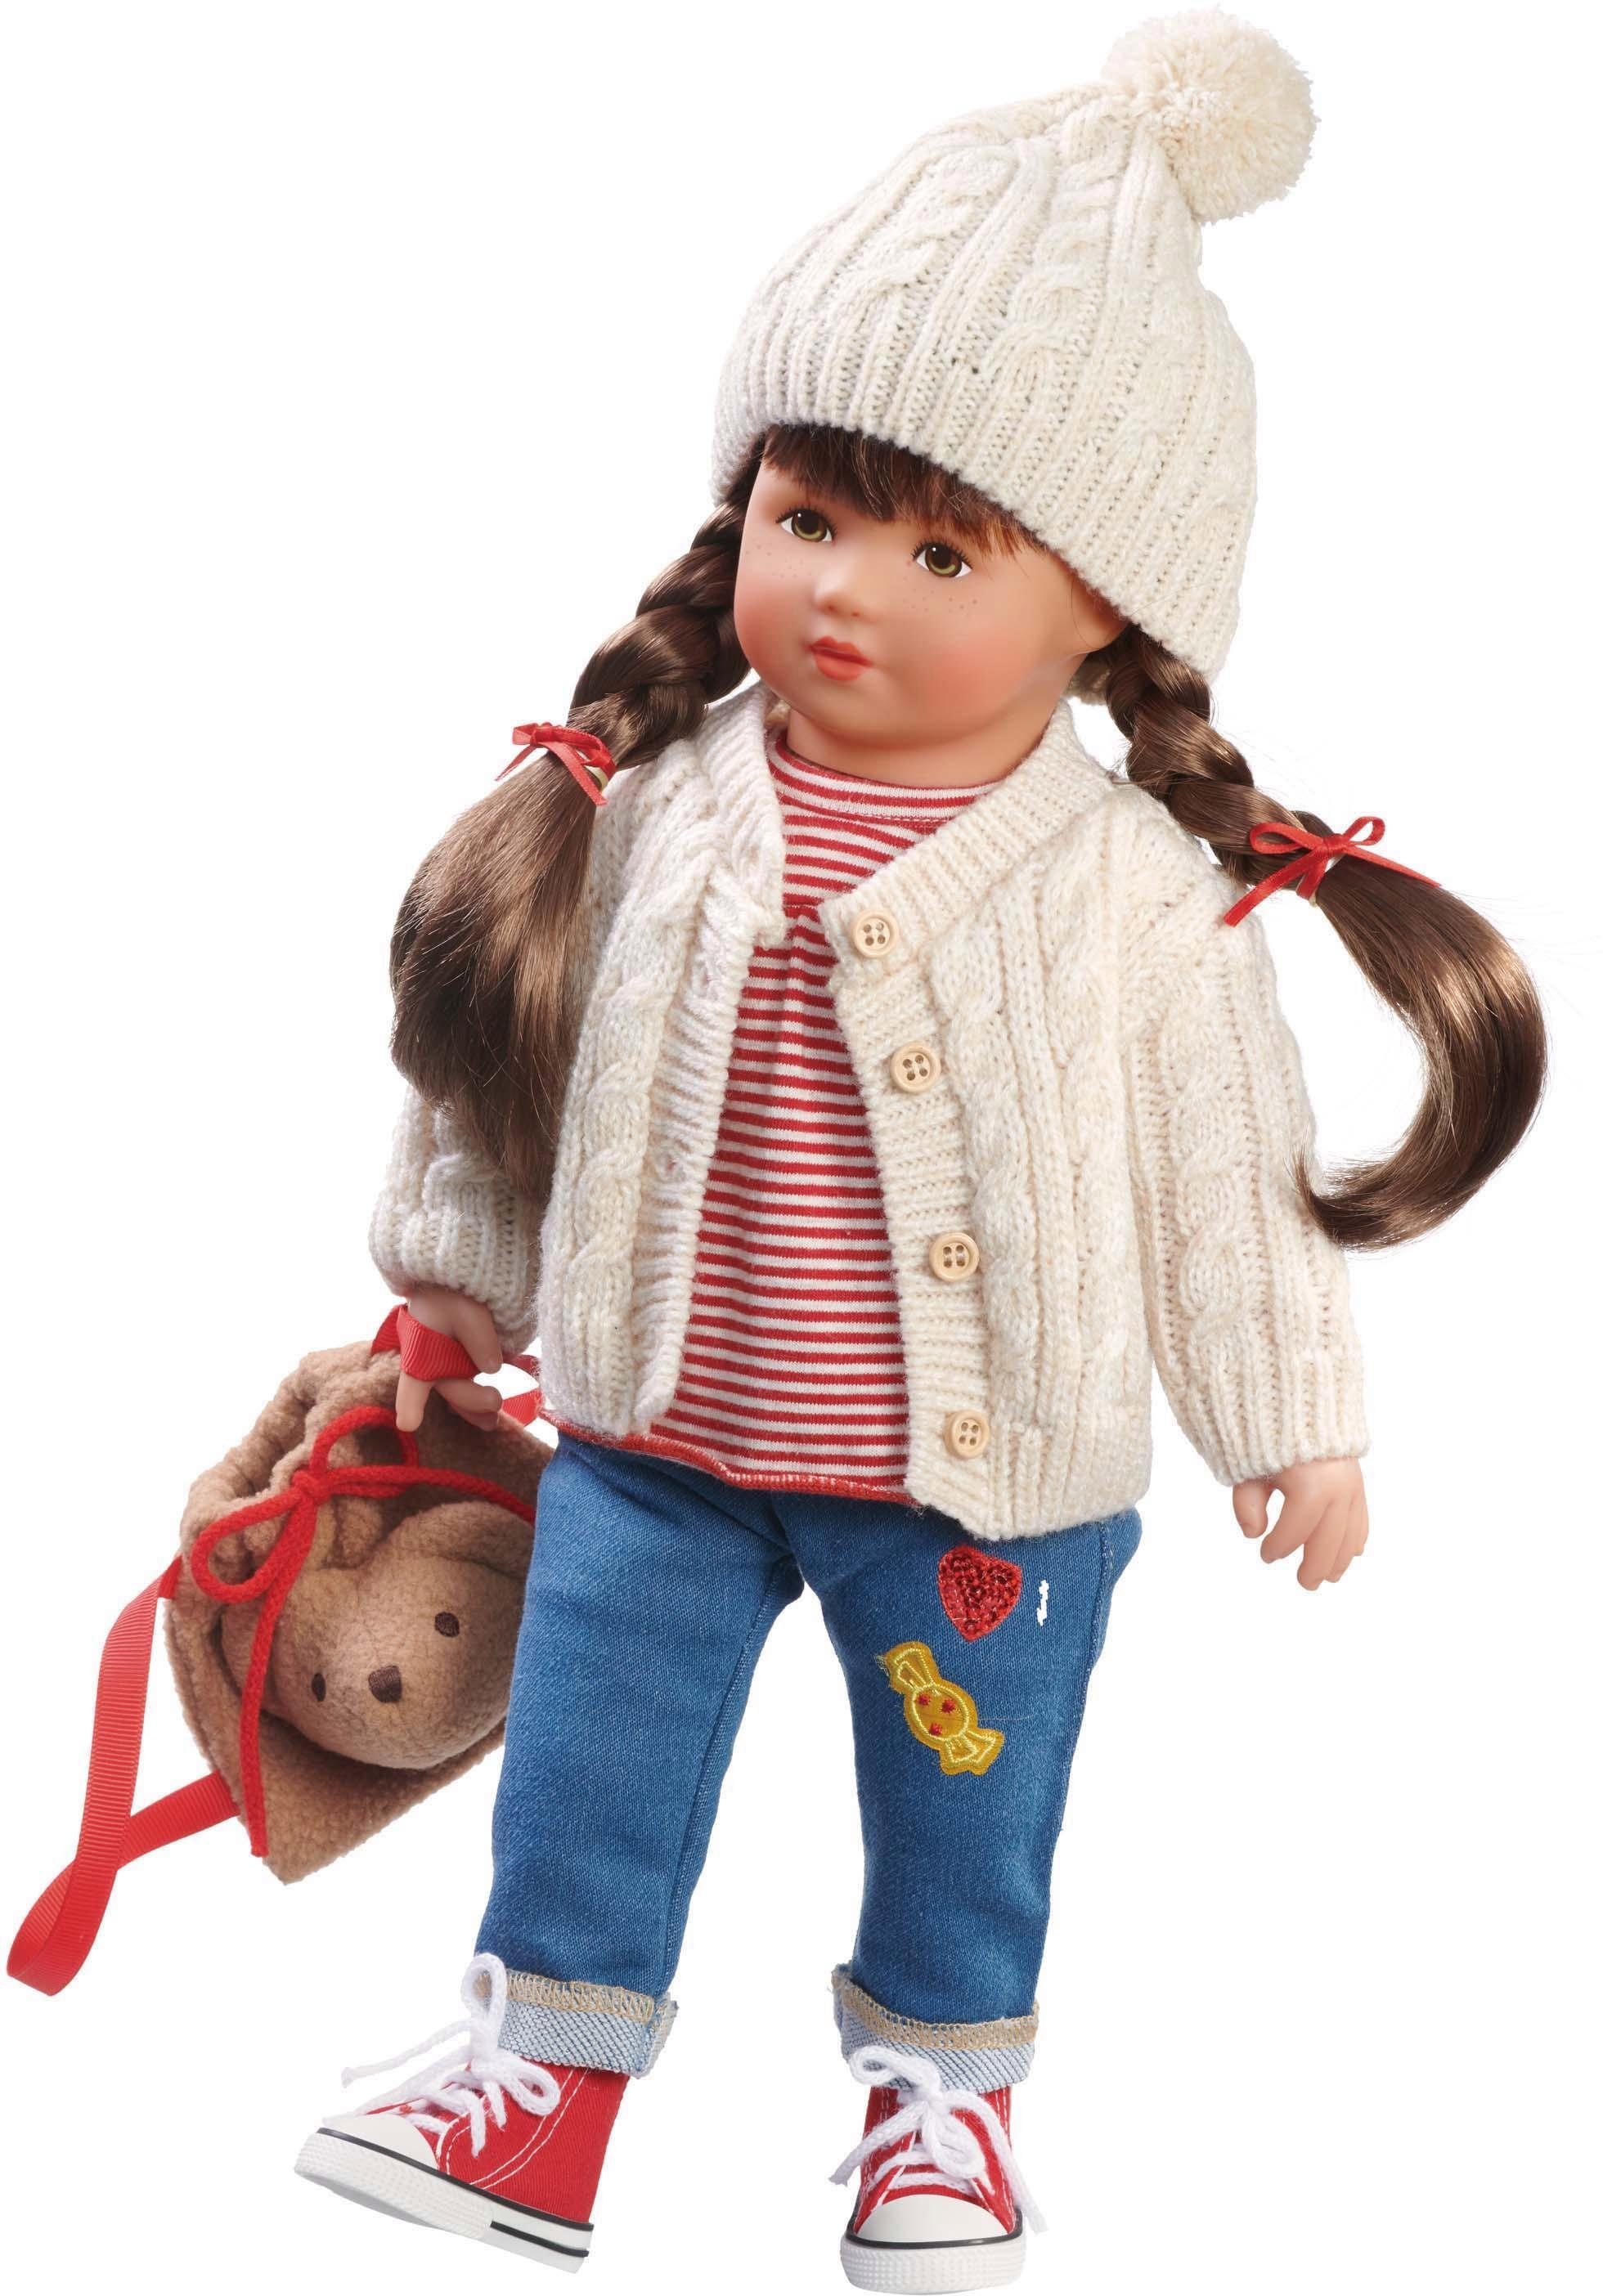 Käthe Kruse Puppen online kaufen | OTTO